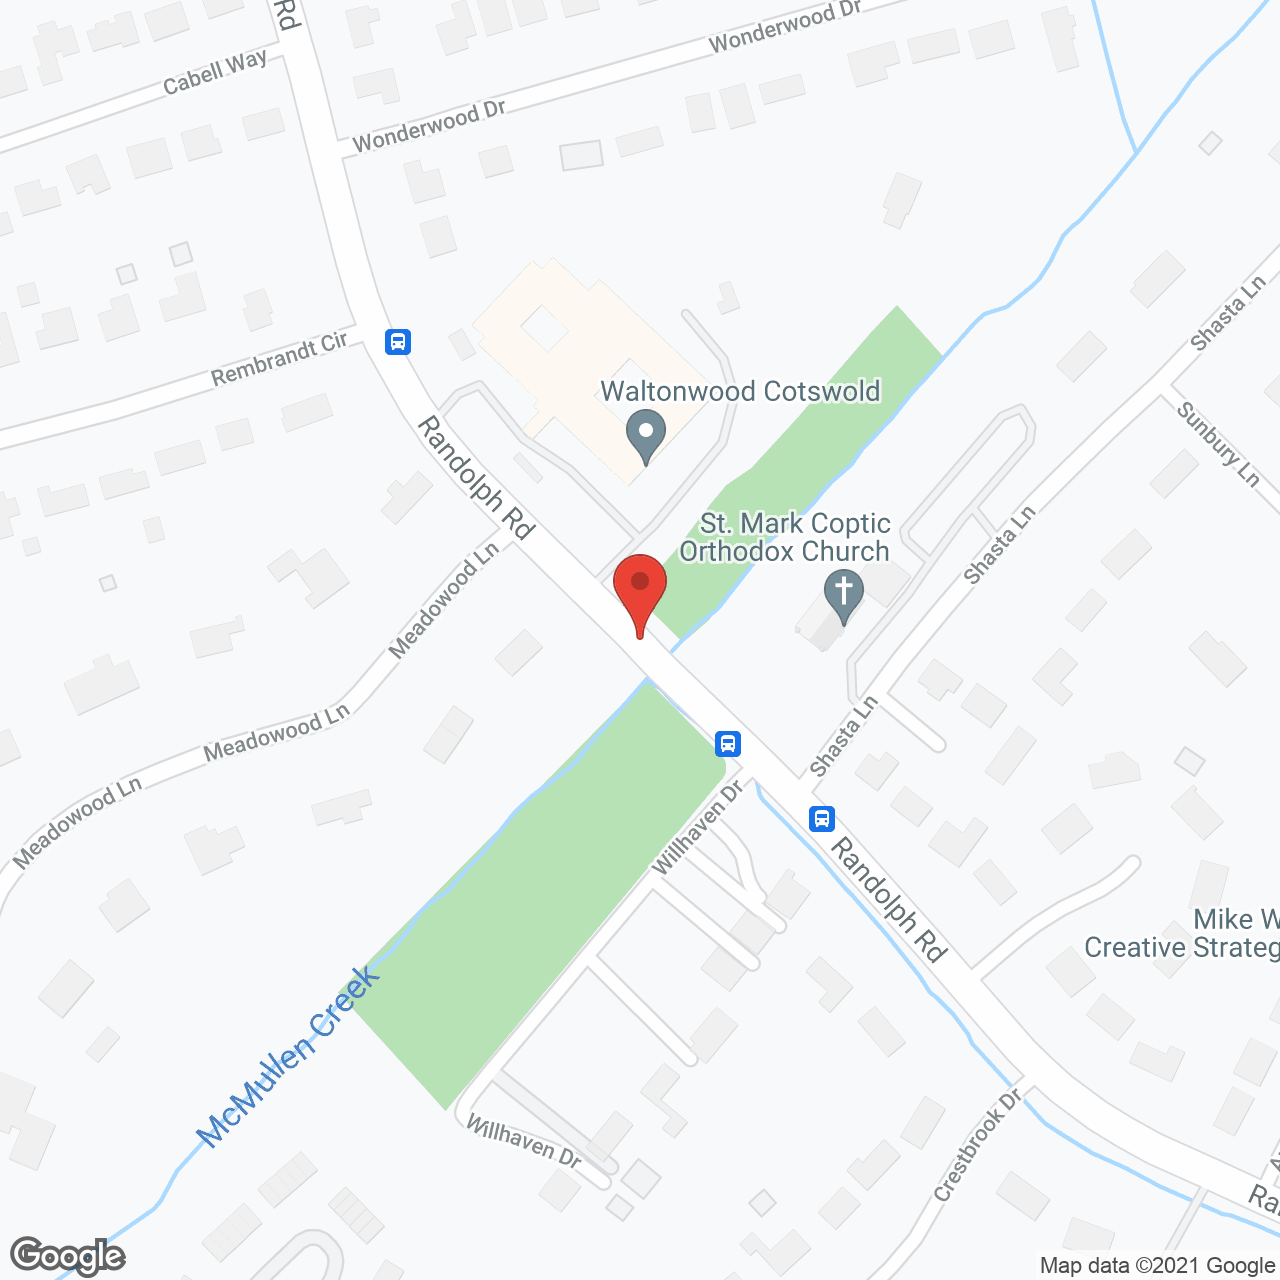 Waltonwood Cotswold in google map